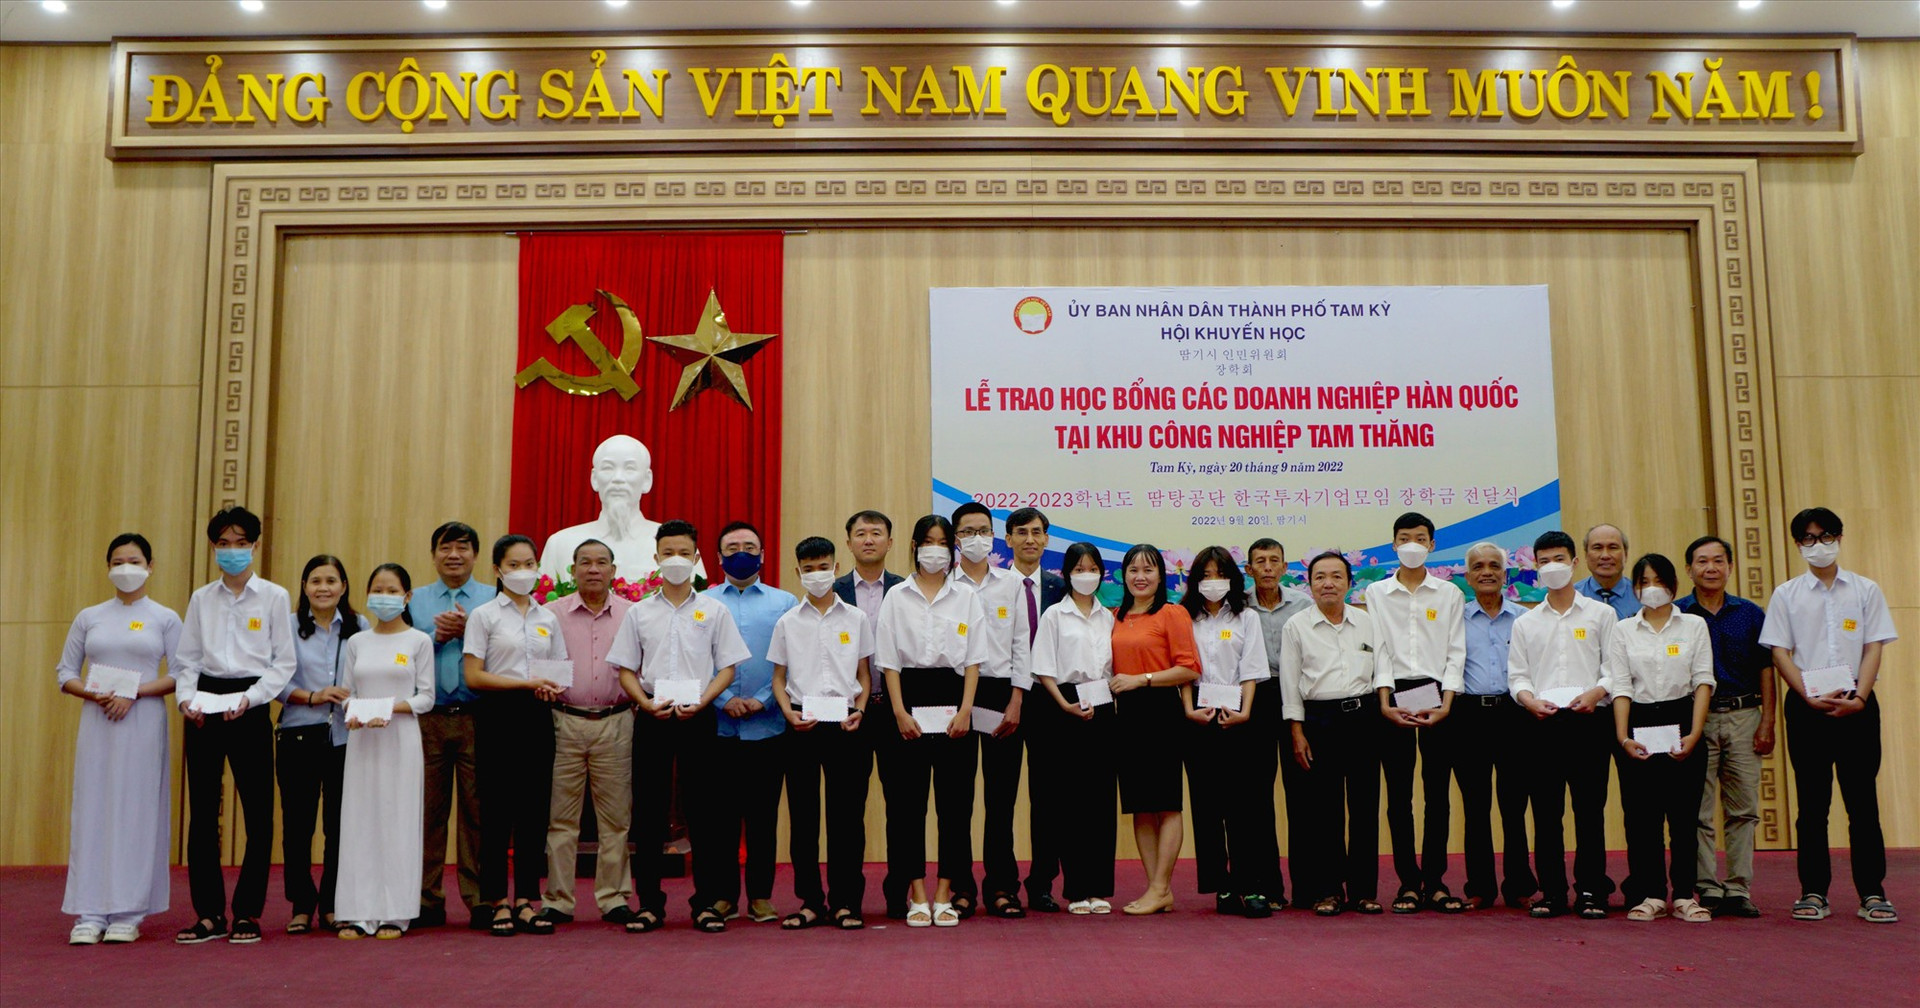 Các em học sinh chụp ảnh lưu niệm cùng các nhà tài trợ và đại biểu. Ảnh: Nguyễn Điện Ngọc